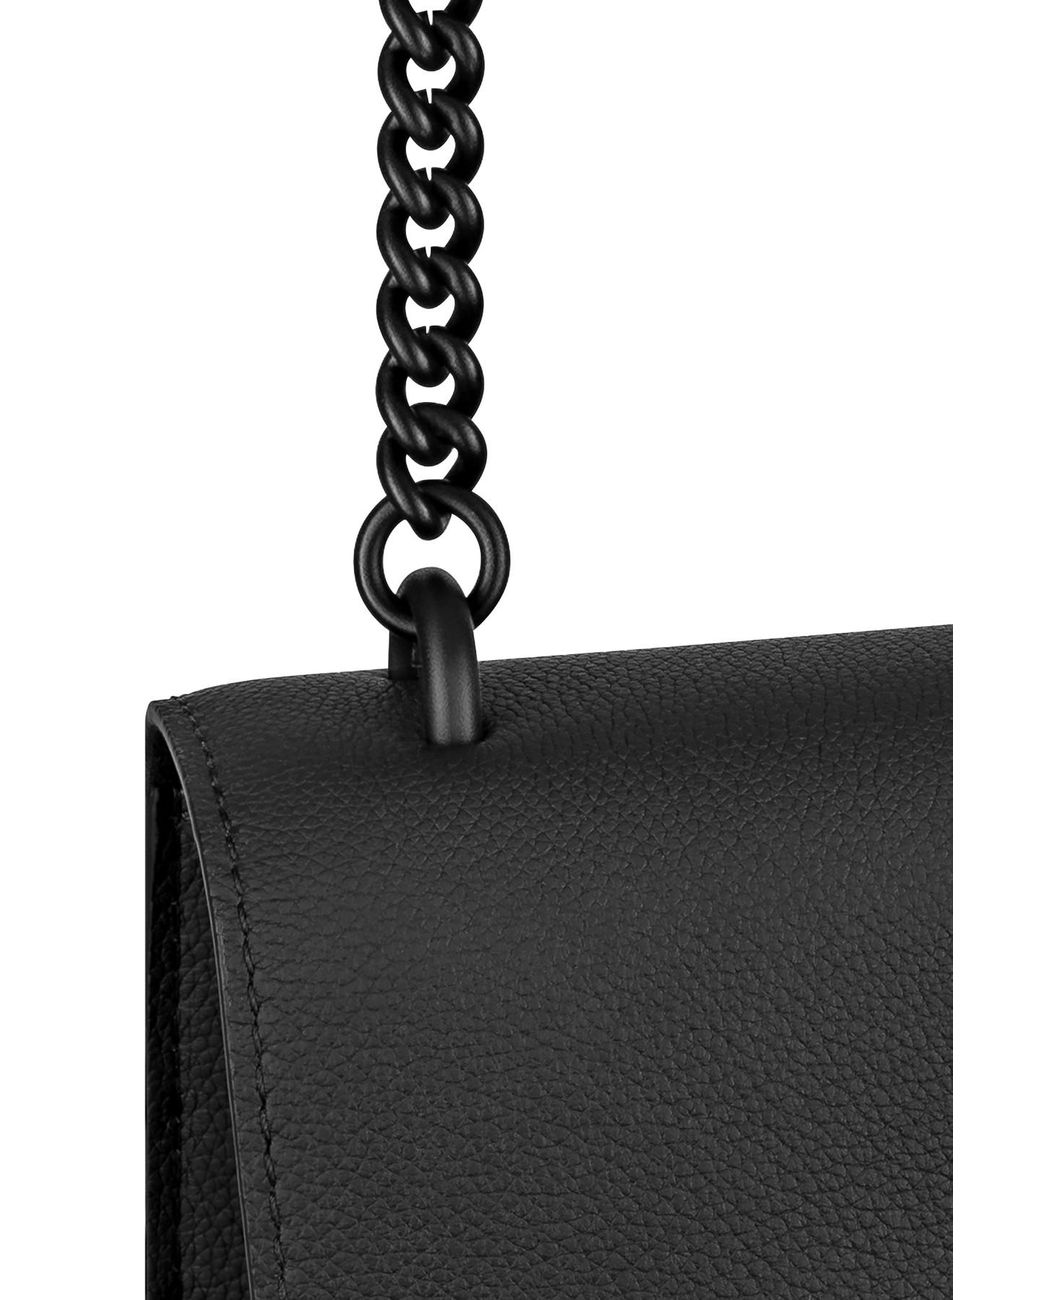 LOUIS VUITTON Mylockme Chain Calf Leather Chain Shoulder Bag Green - N